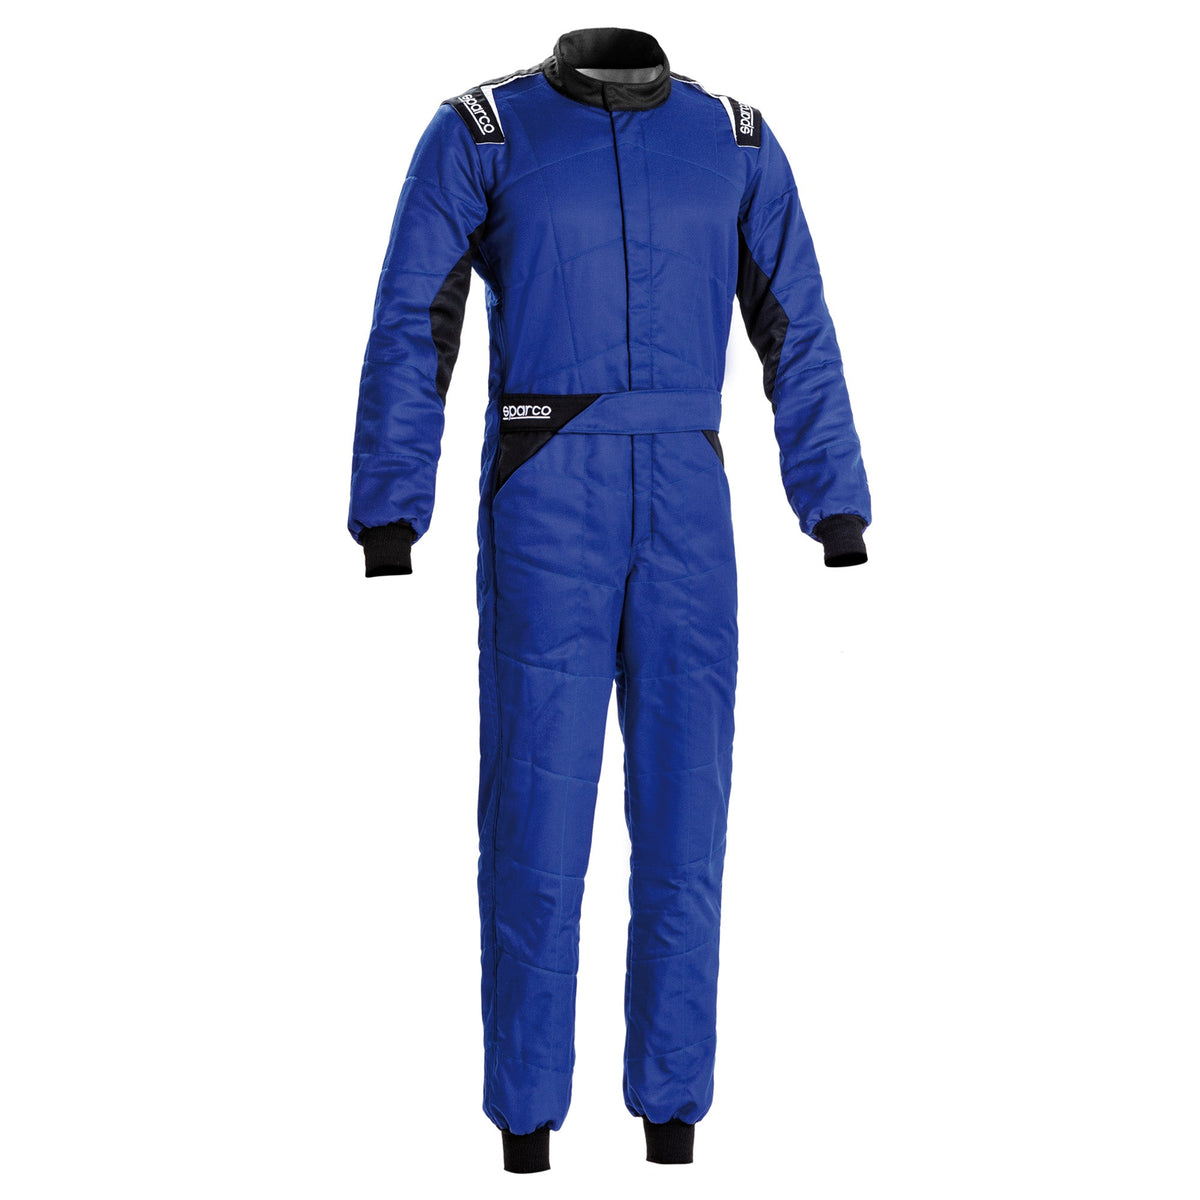 Sparco Sprint Racing Suit - Blue/Black